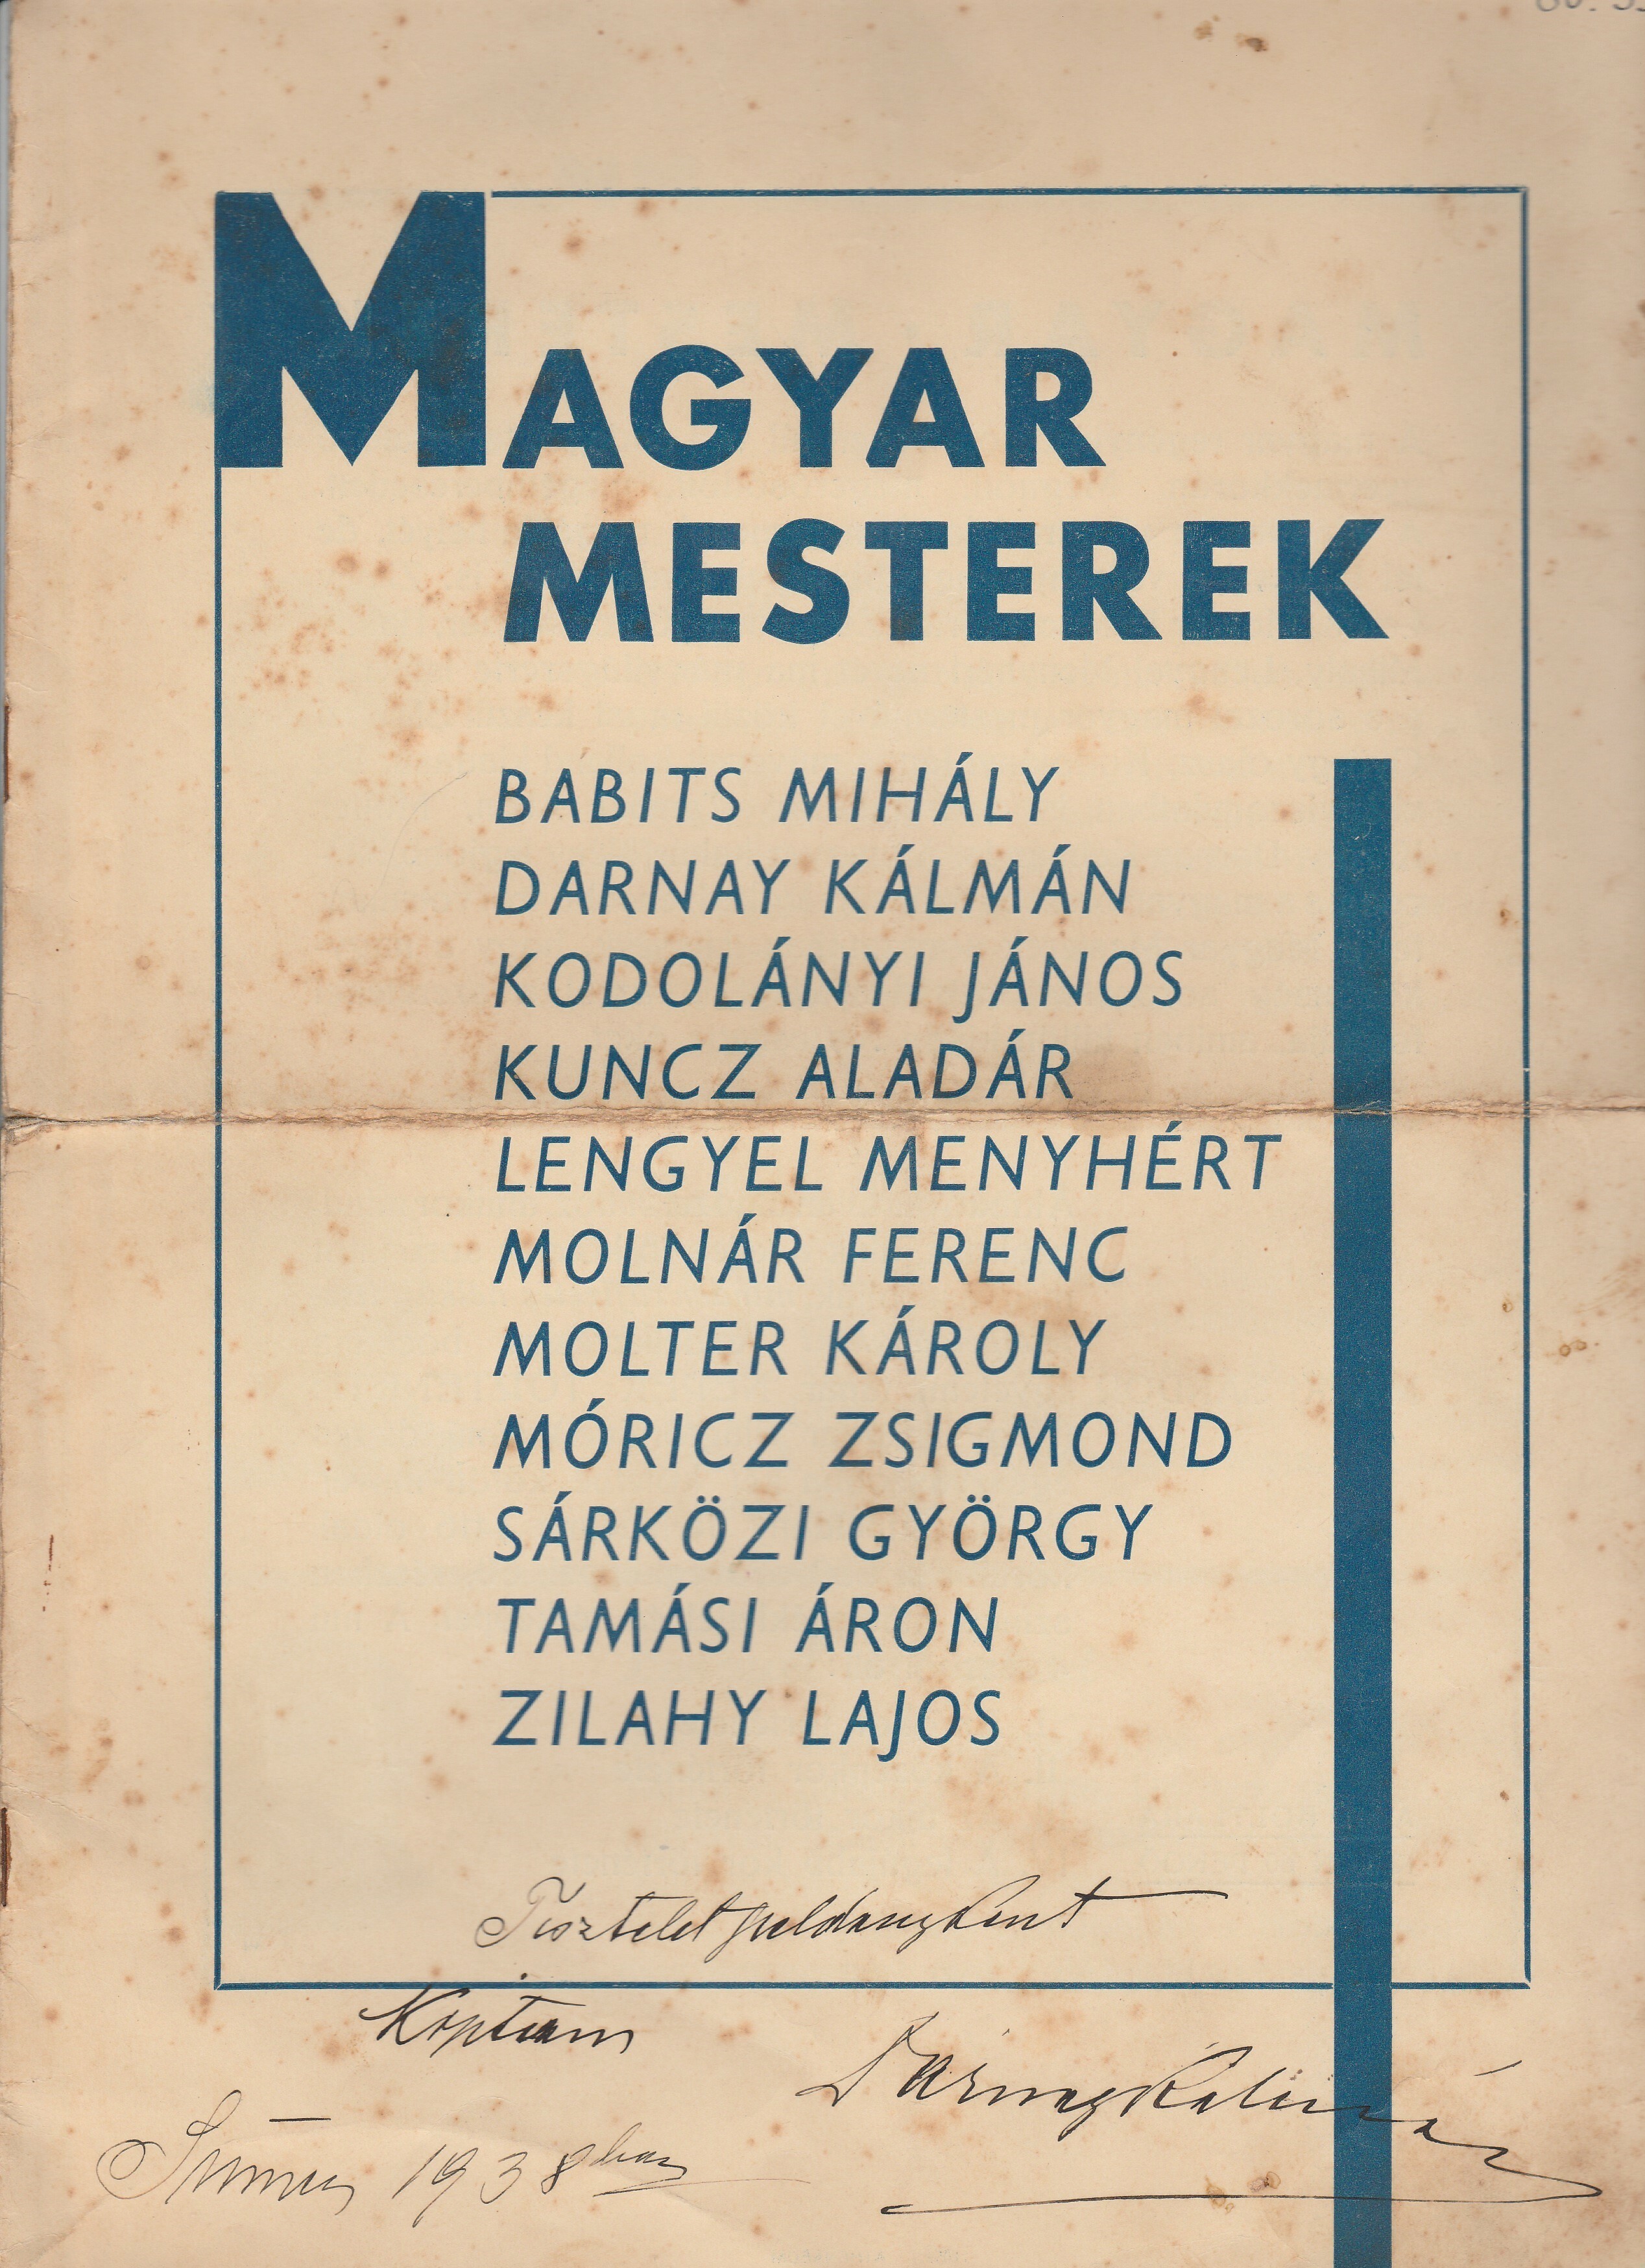 Magyar mesterek könyvsorozat reklámanyaga (Tapolcai Városi Múzeum CC BY-NC-SA)